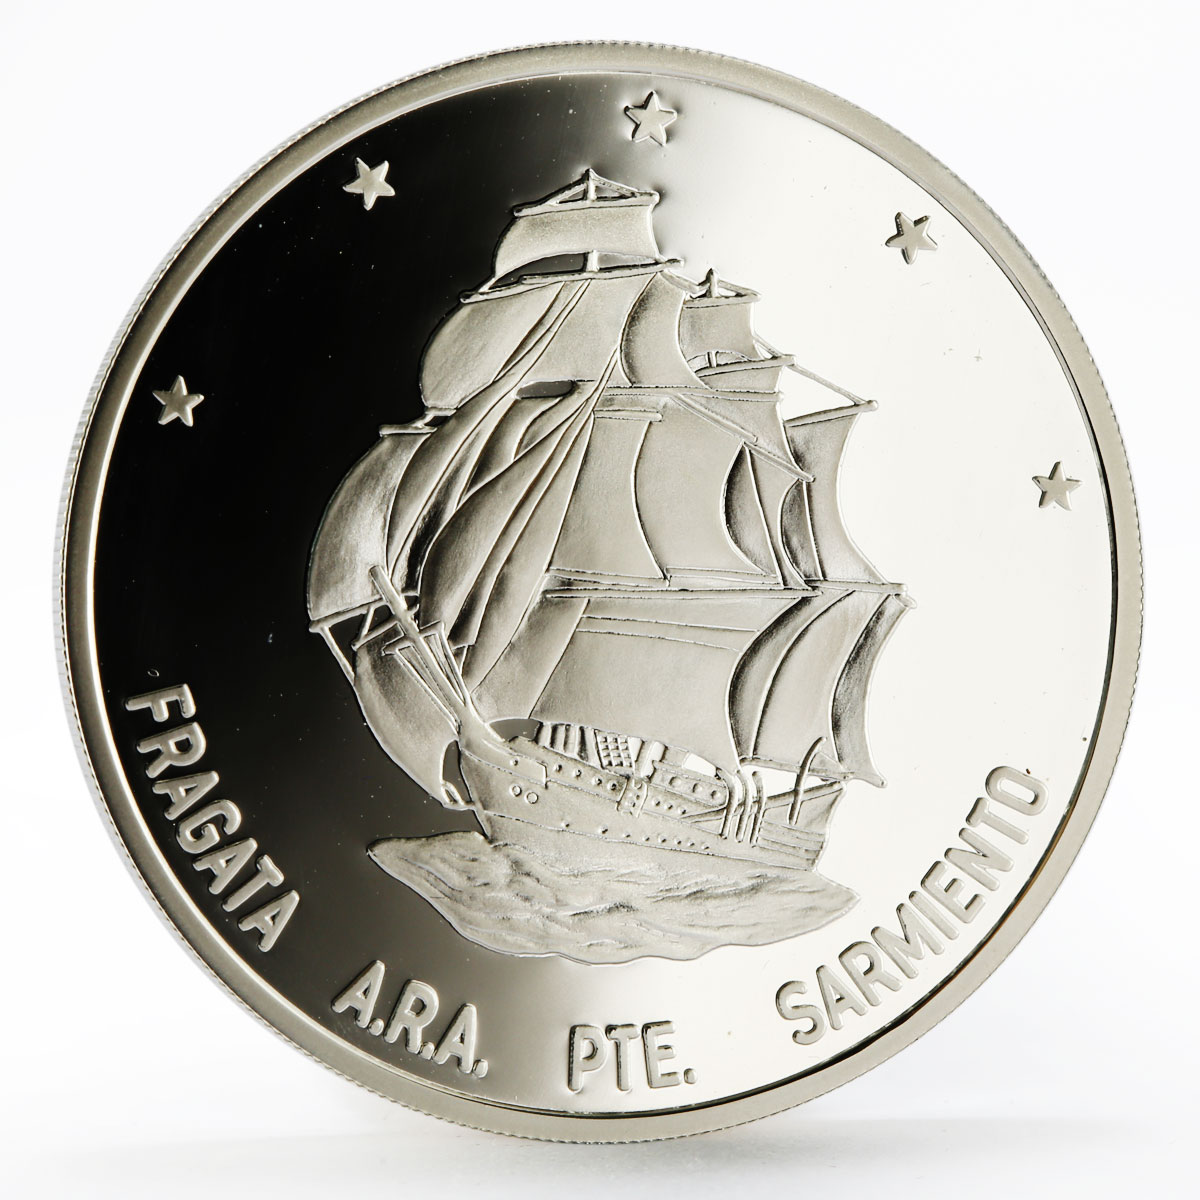 Argentina 25 pesos Ship Presidente Sarmiento proof silver coin 2002